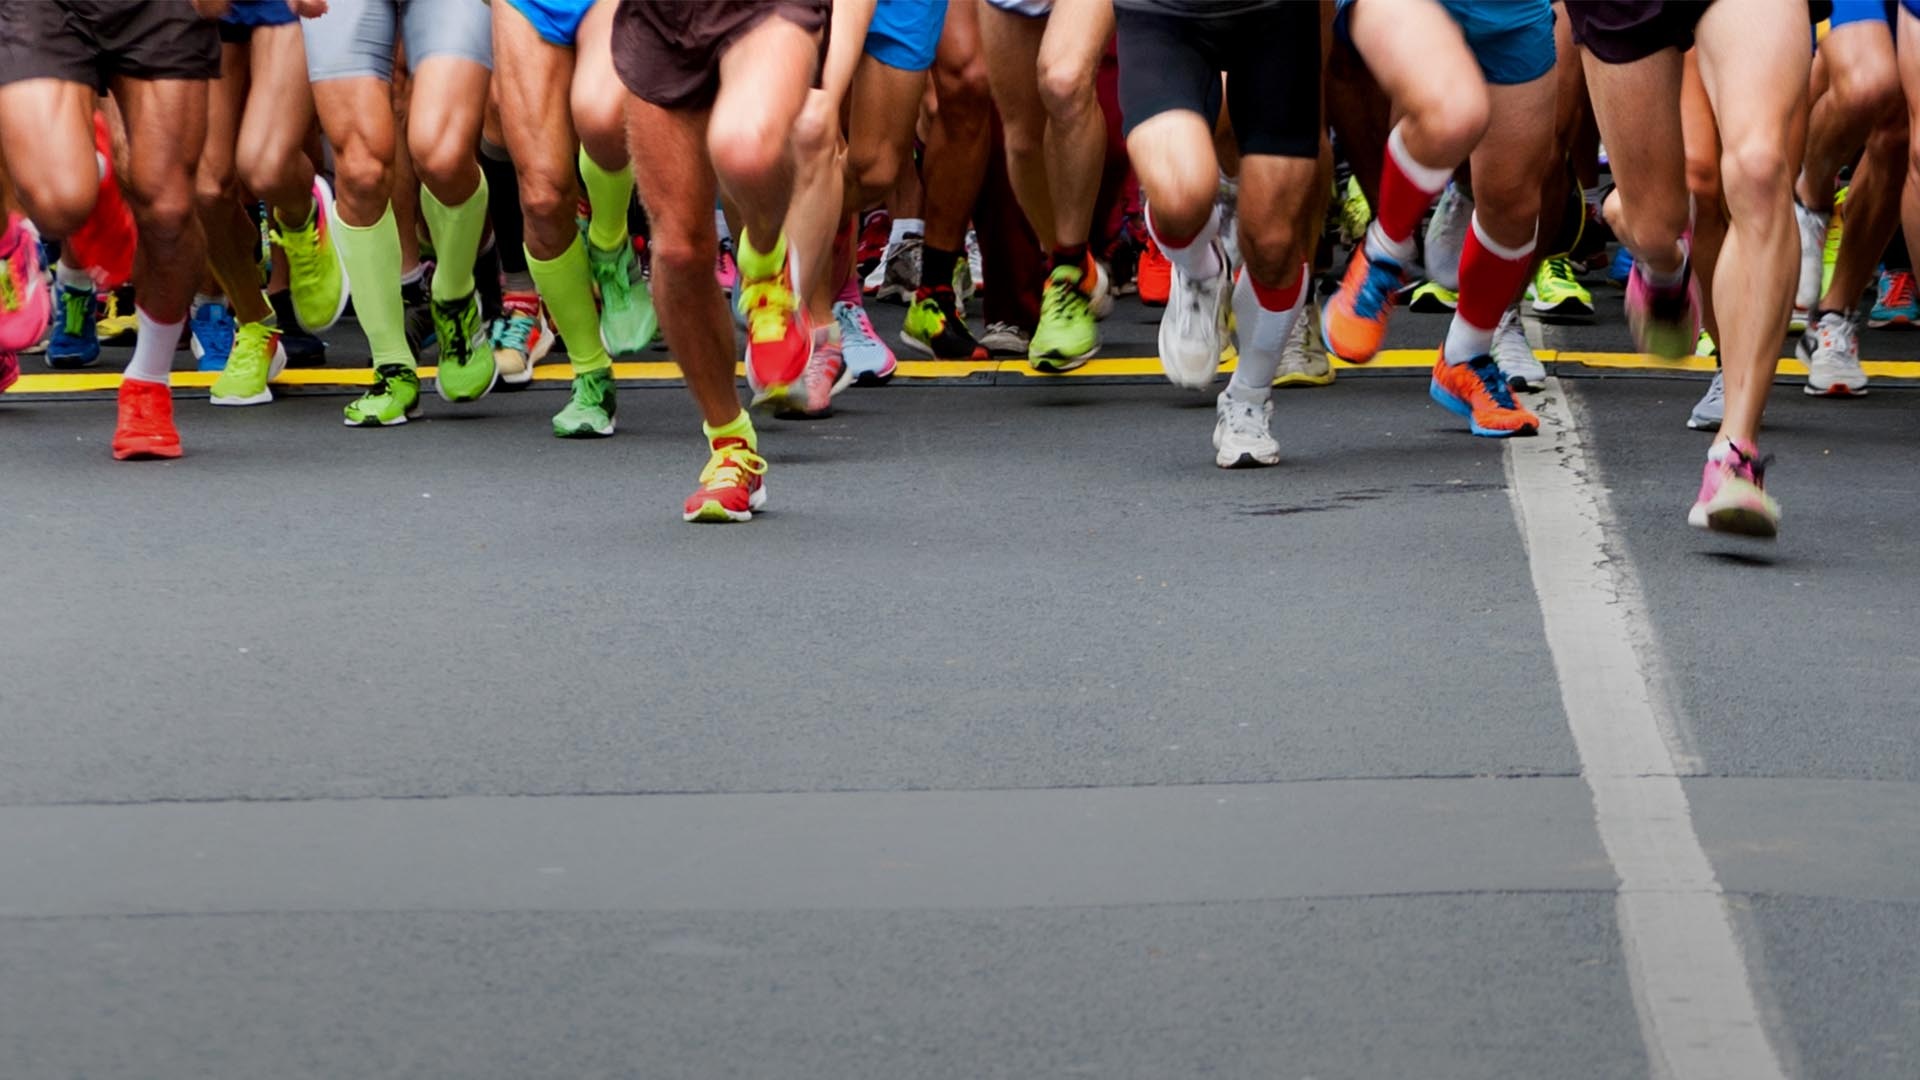 Marathon: Racetrack, The sport of running long-distance races, Long-distance runners. 1920x1080 Full HD Wallpaper.